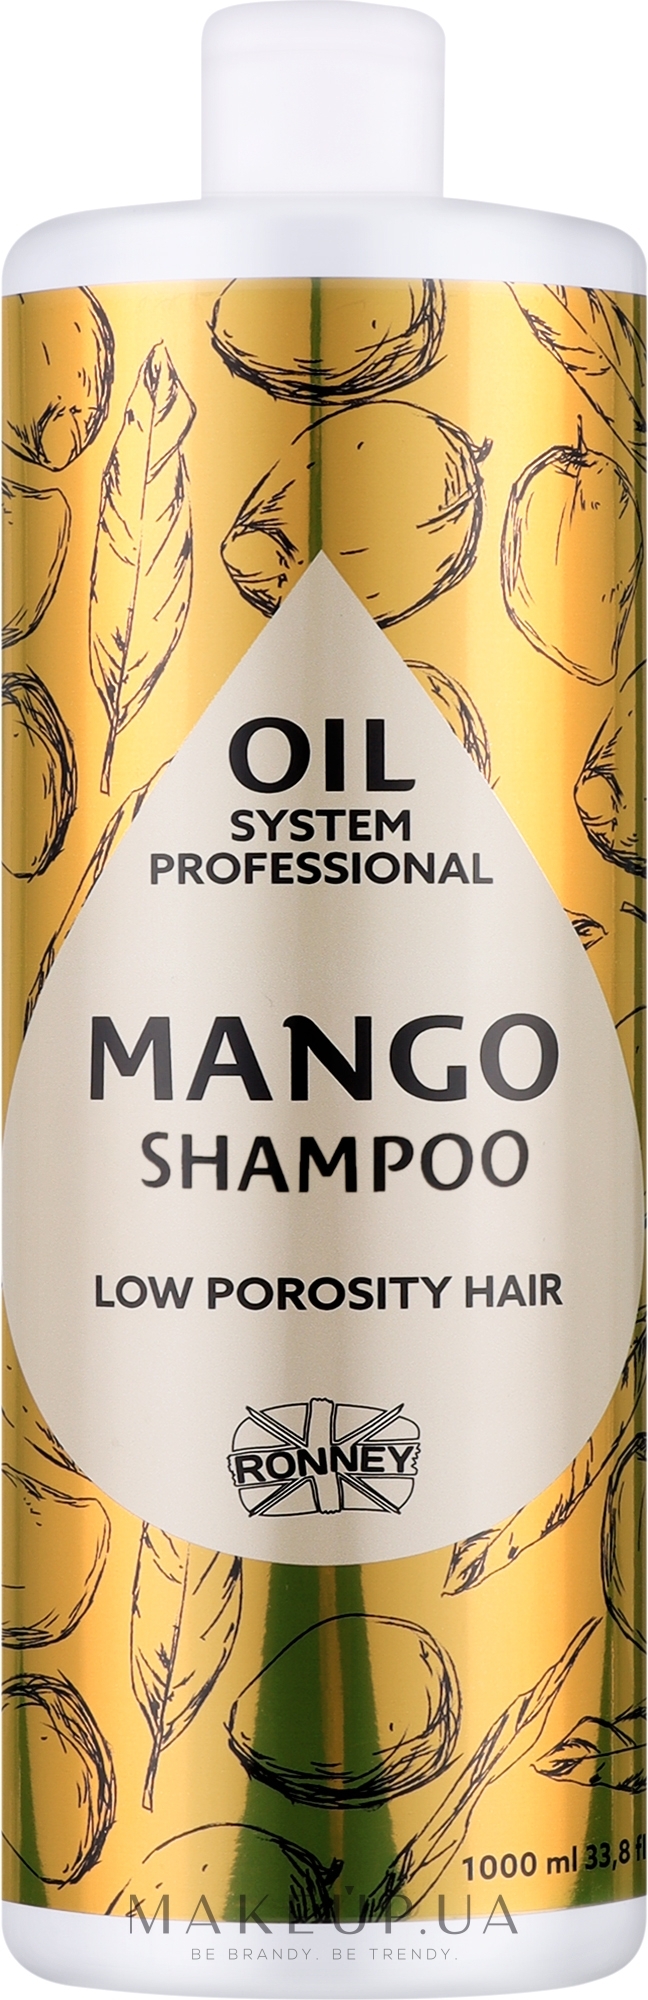 Шампунь для низькопористого волосся з олією манго - Ronney Professional Oil System Low Porosity Hair Mango Shampoo — фото 1000ml